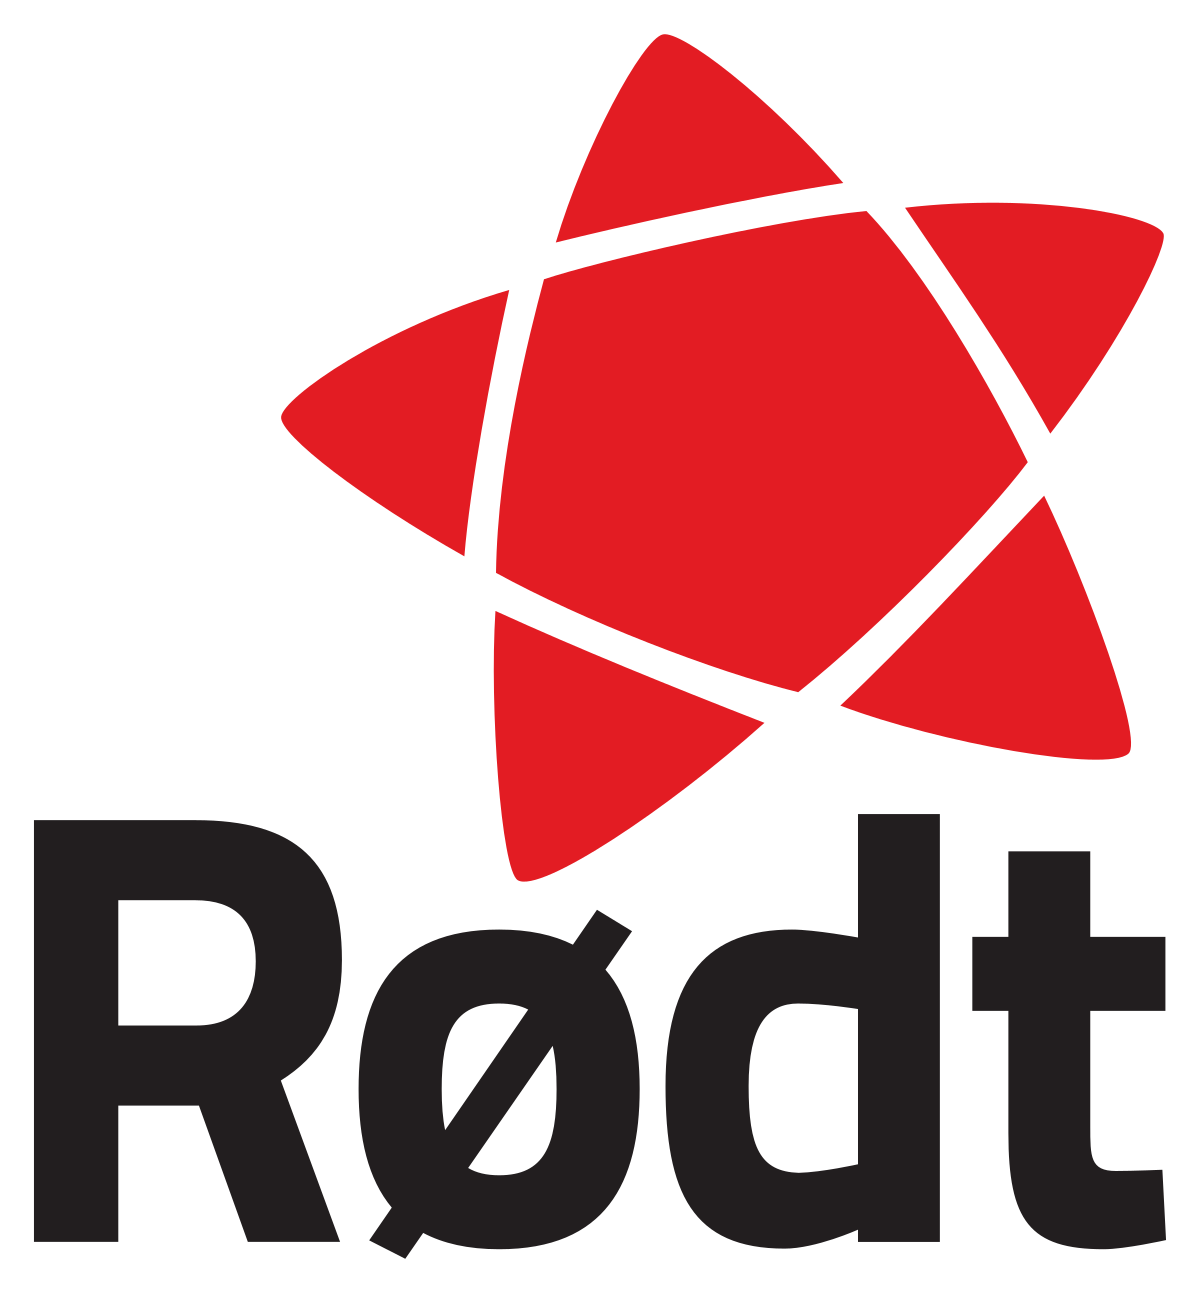 Rødt logo